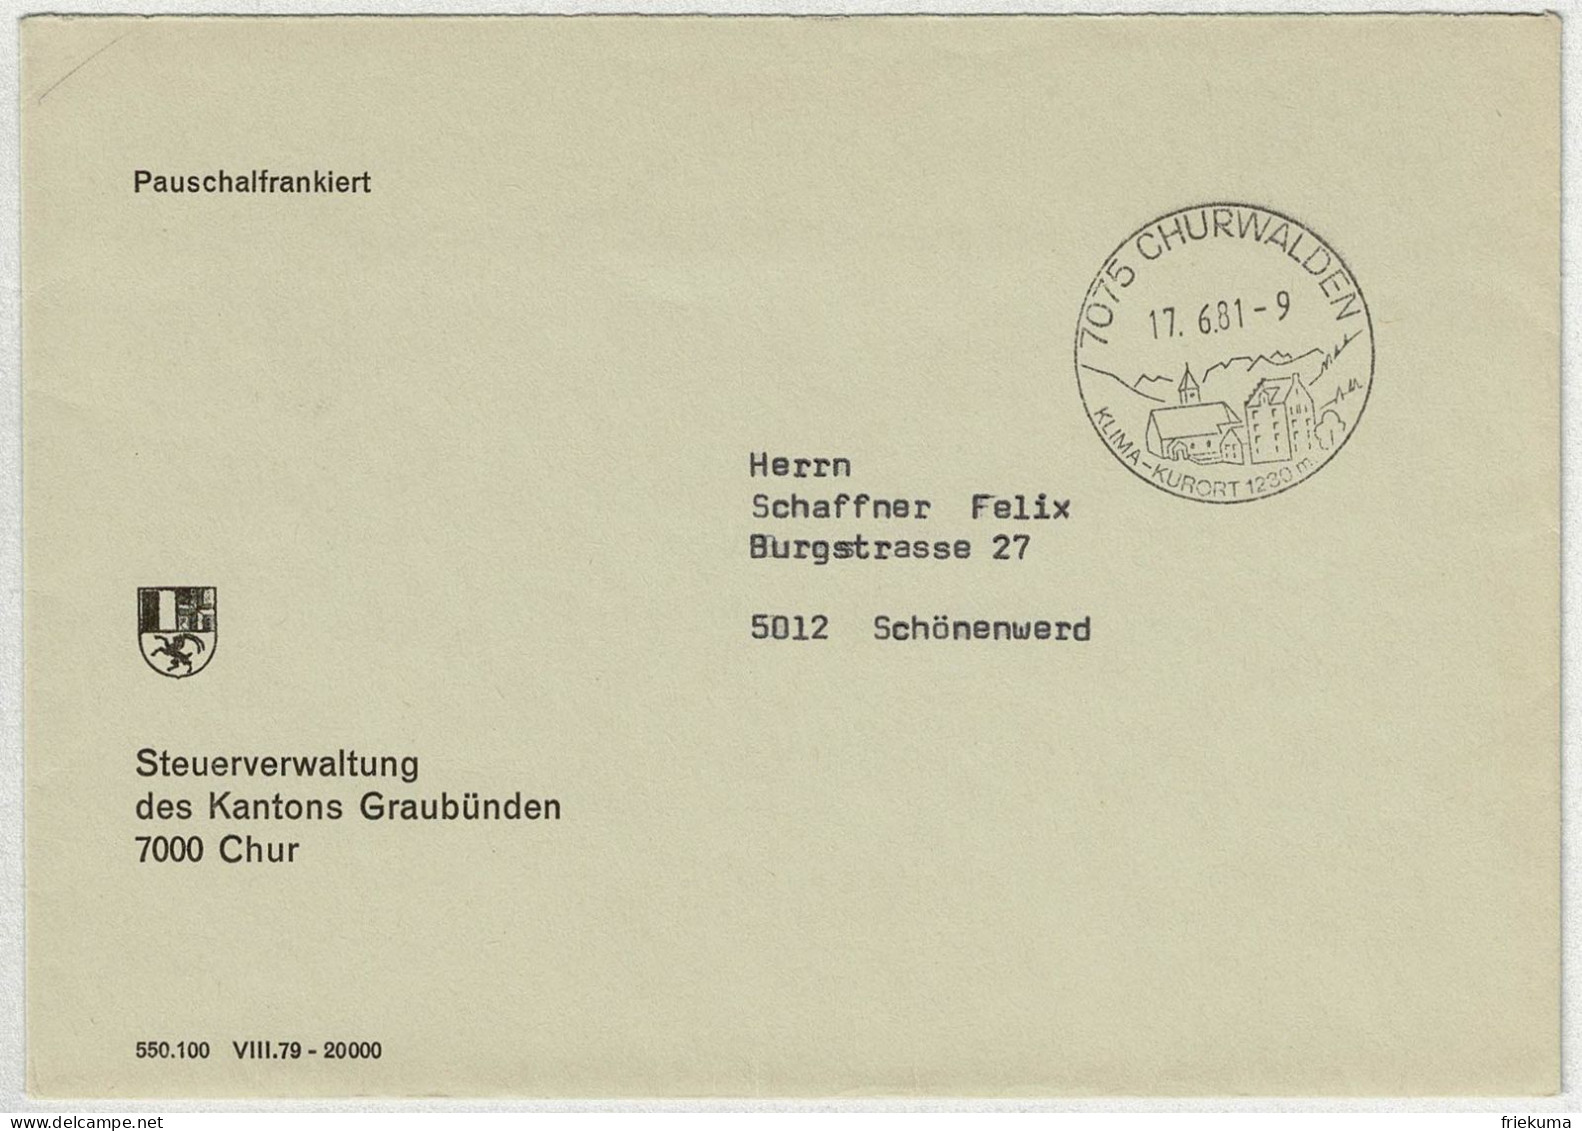 Schweiz 1981, Brief Pauschalfrankiert Churwalden - Schönenwerd - Marcophilie